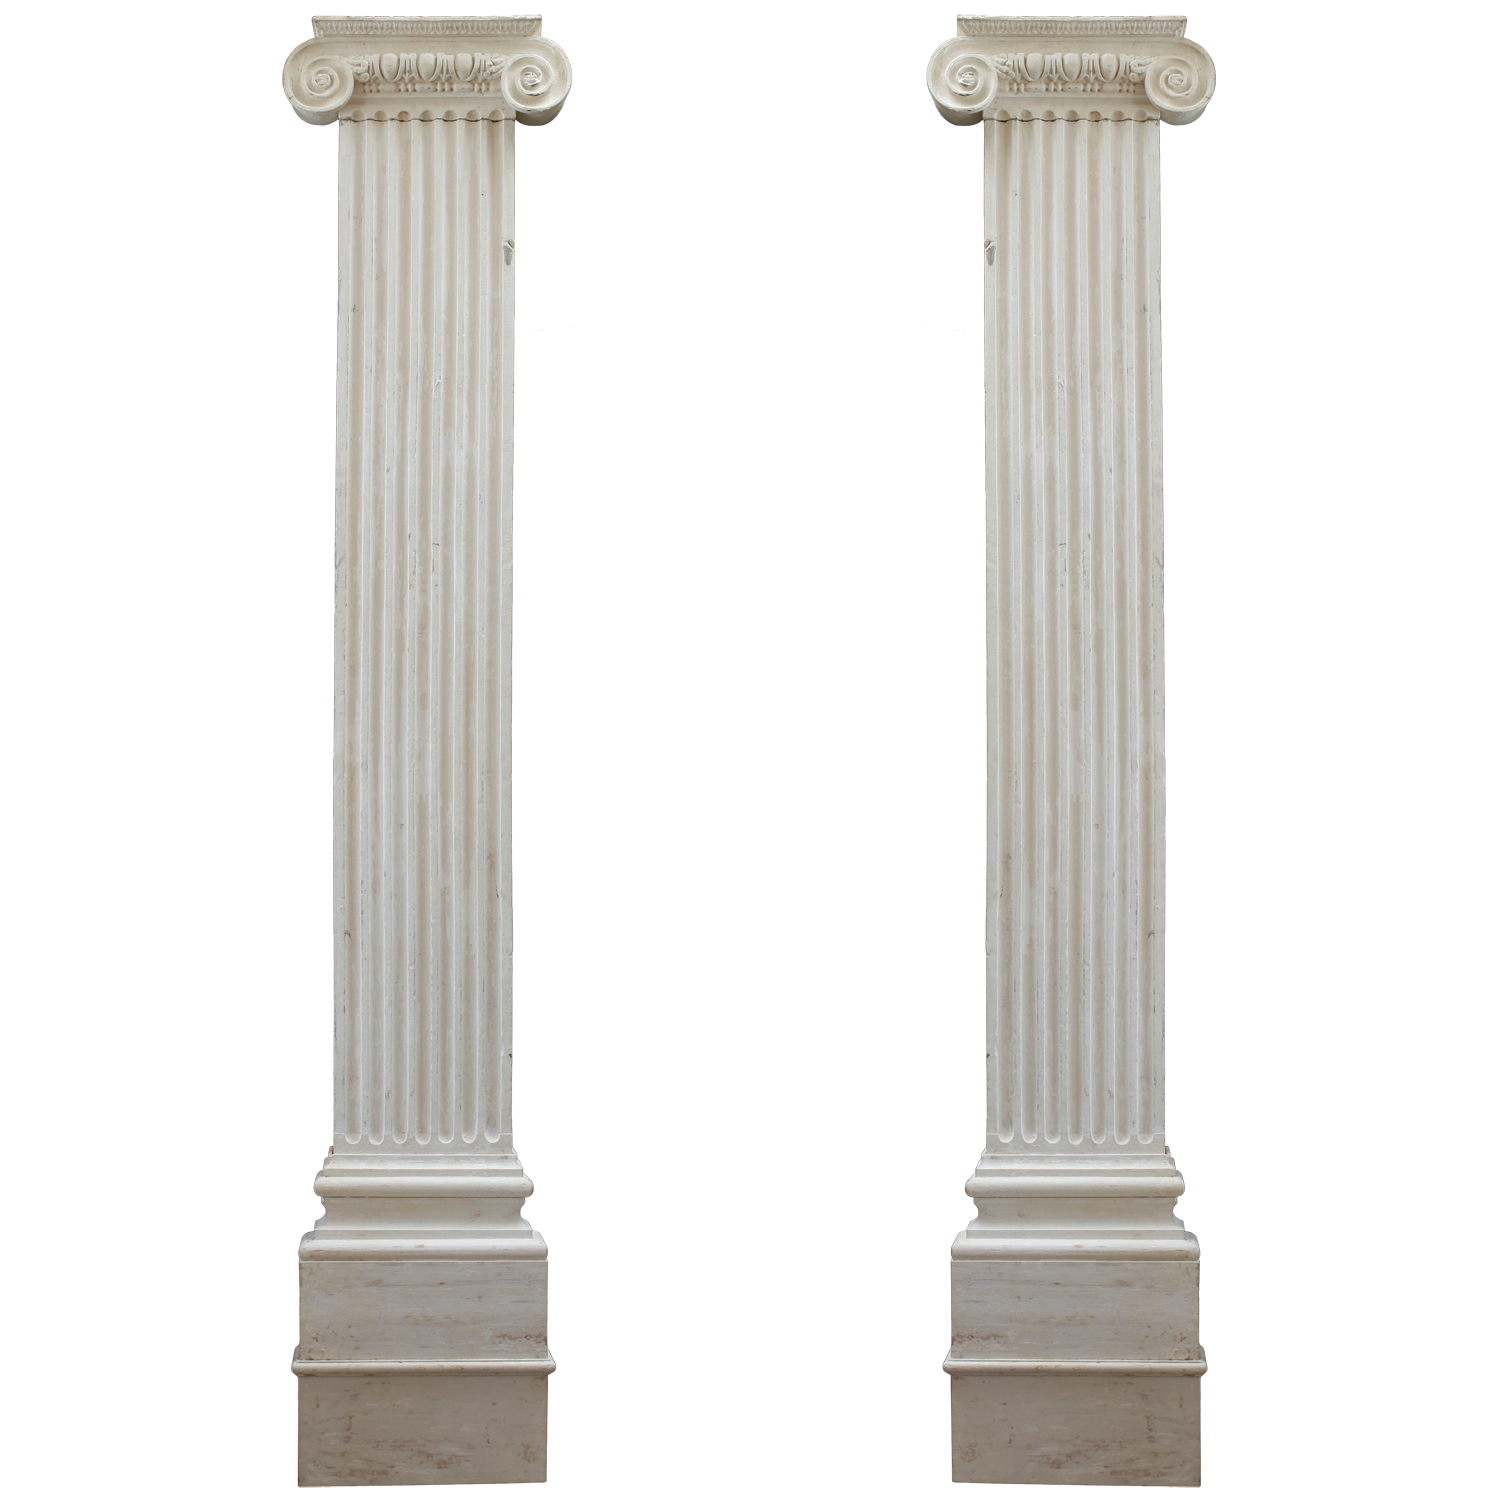 Column PNG